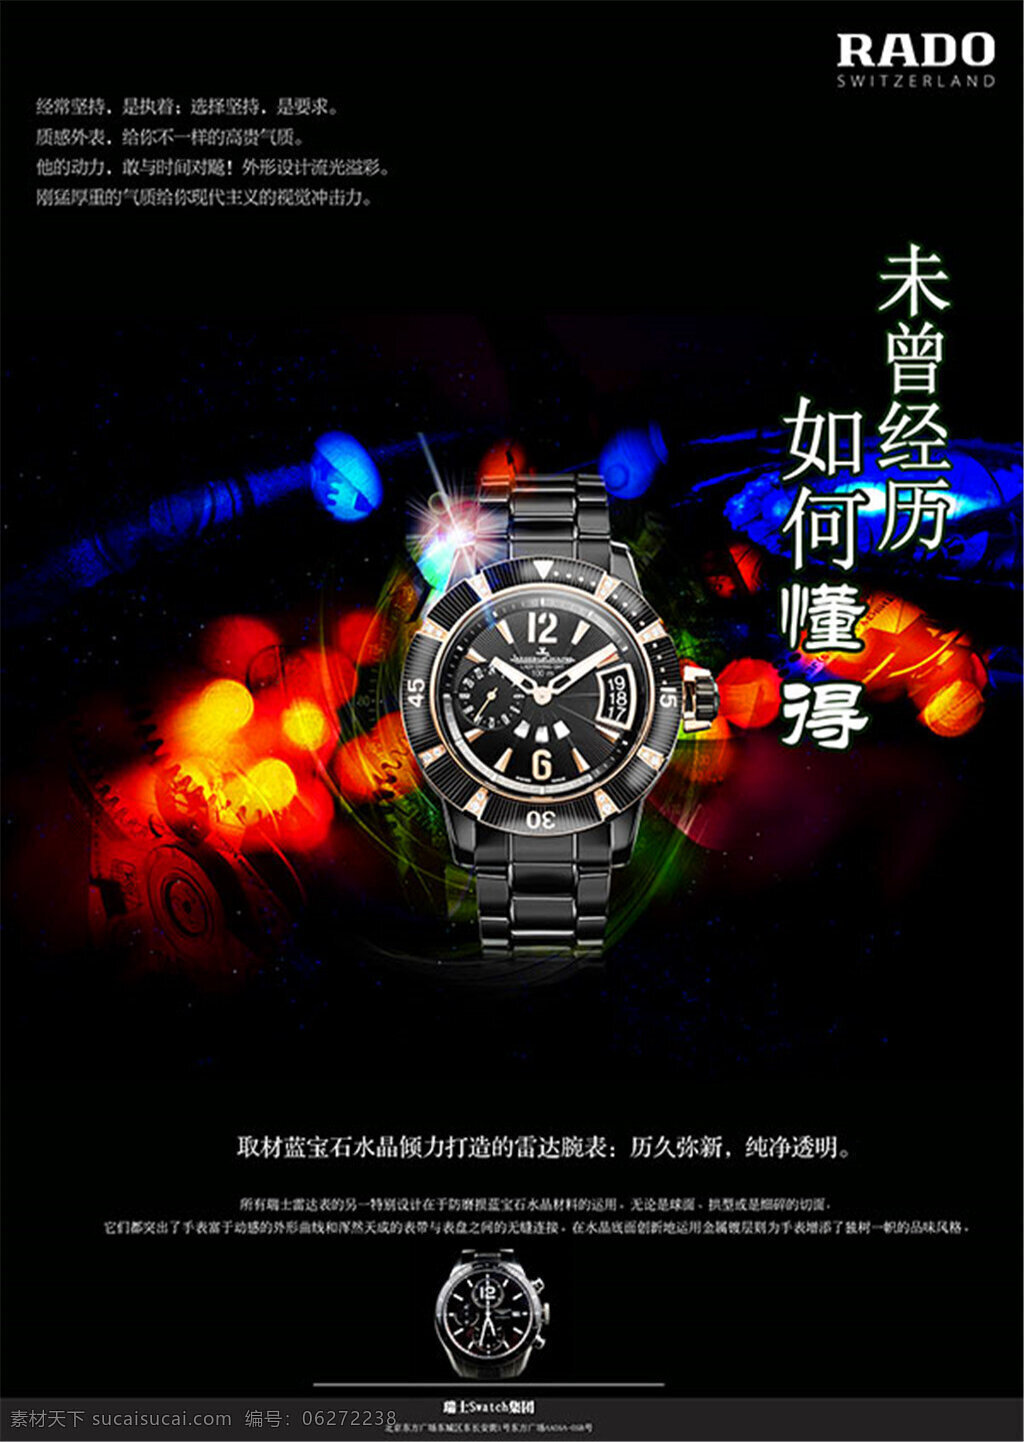 瑞士 手表 广告 海报 未曾经历 如何懂得 瑞士手表 运用手表部件 历久弥新 纯净透明